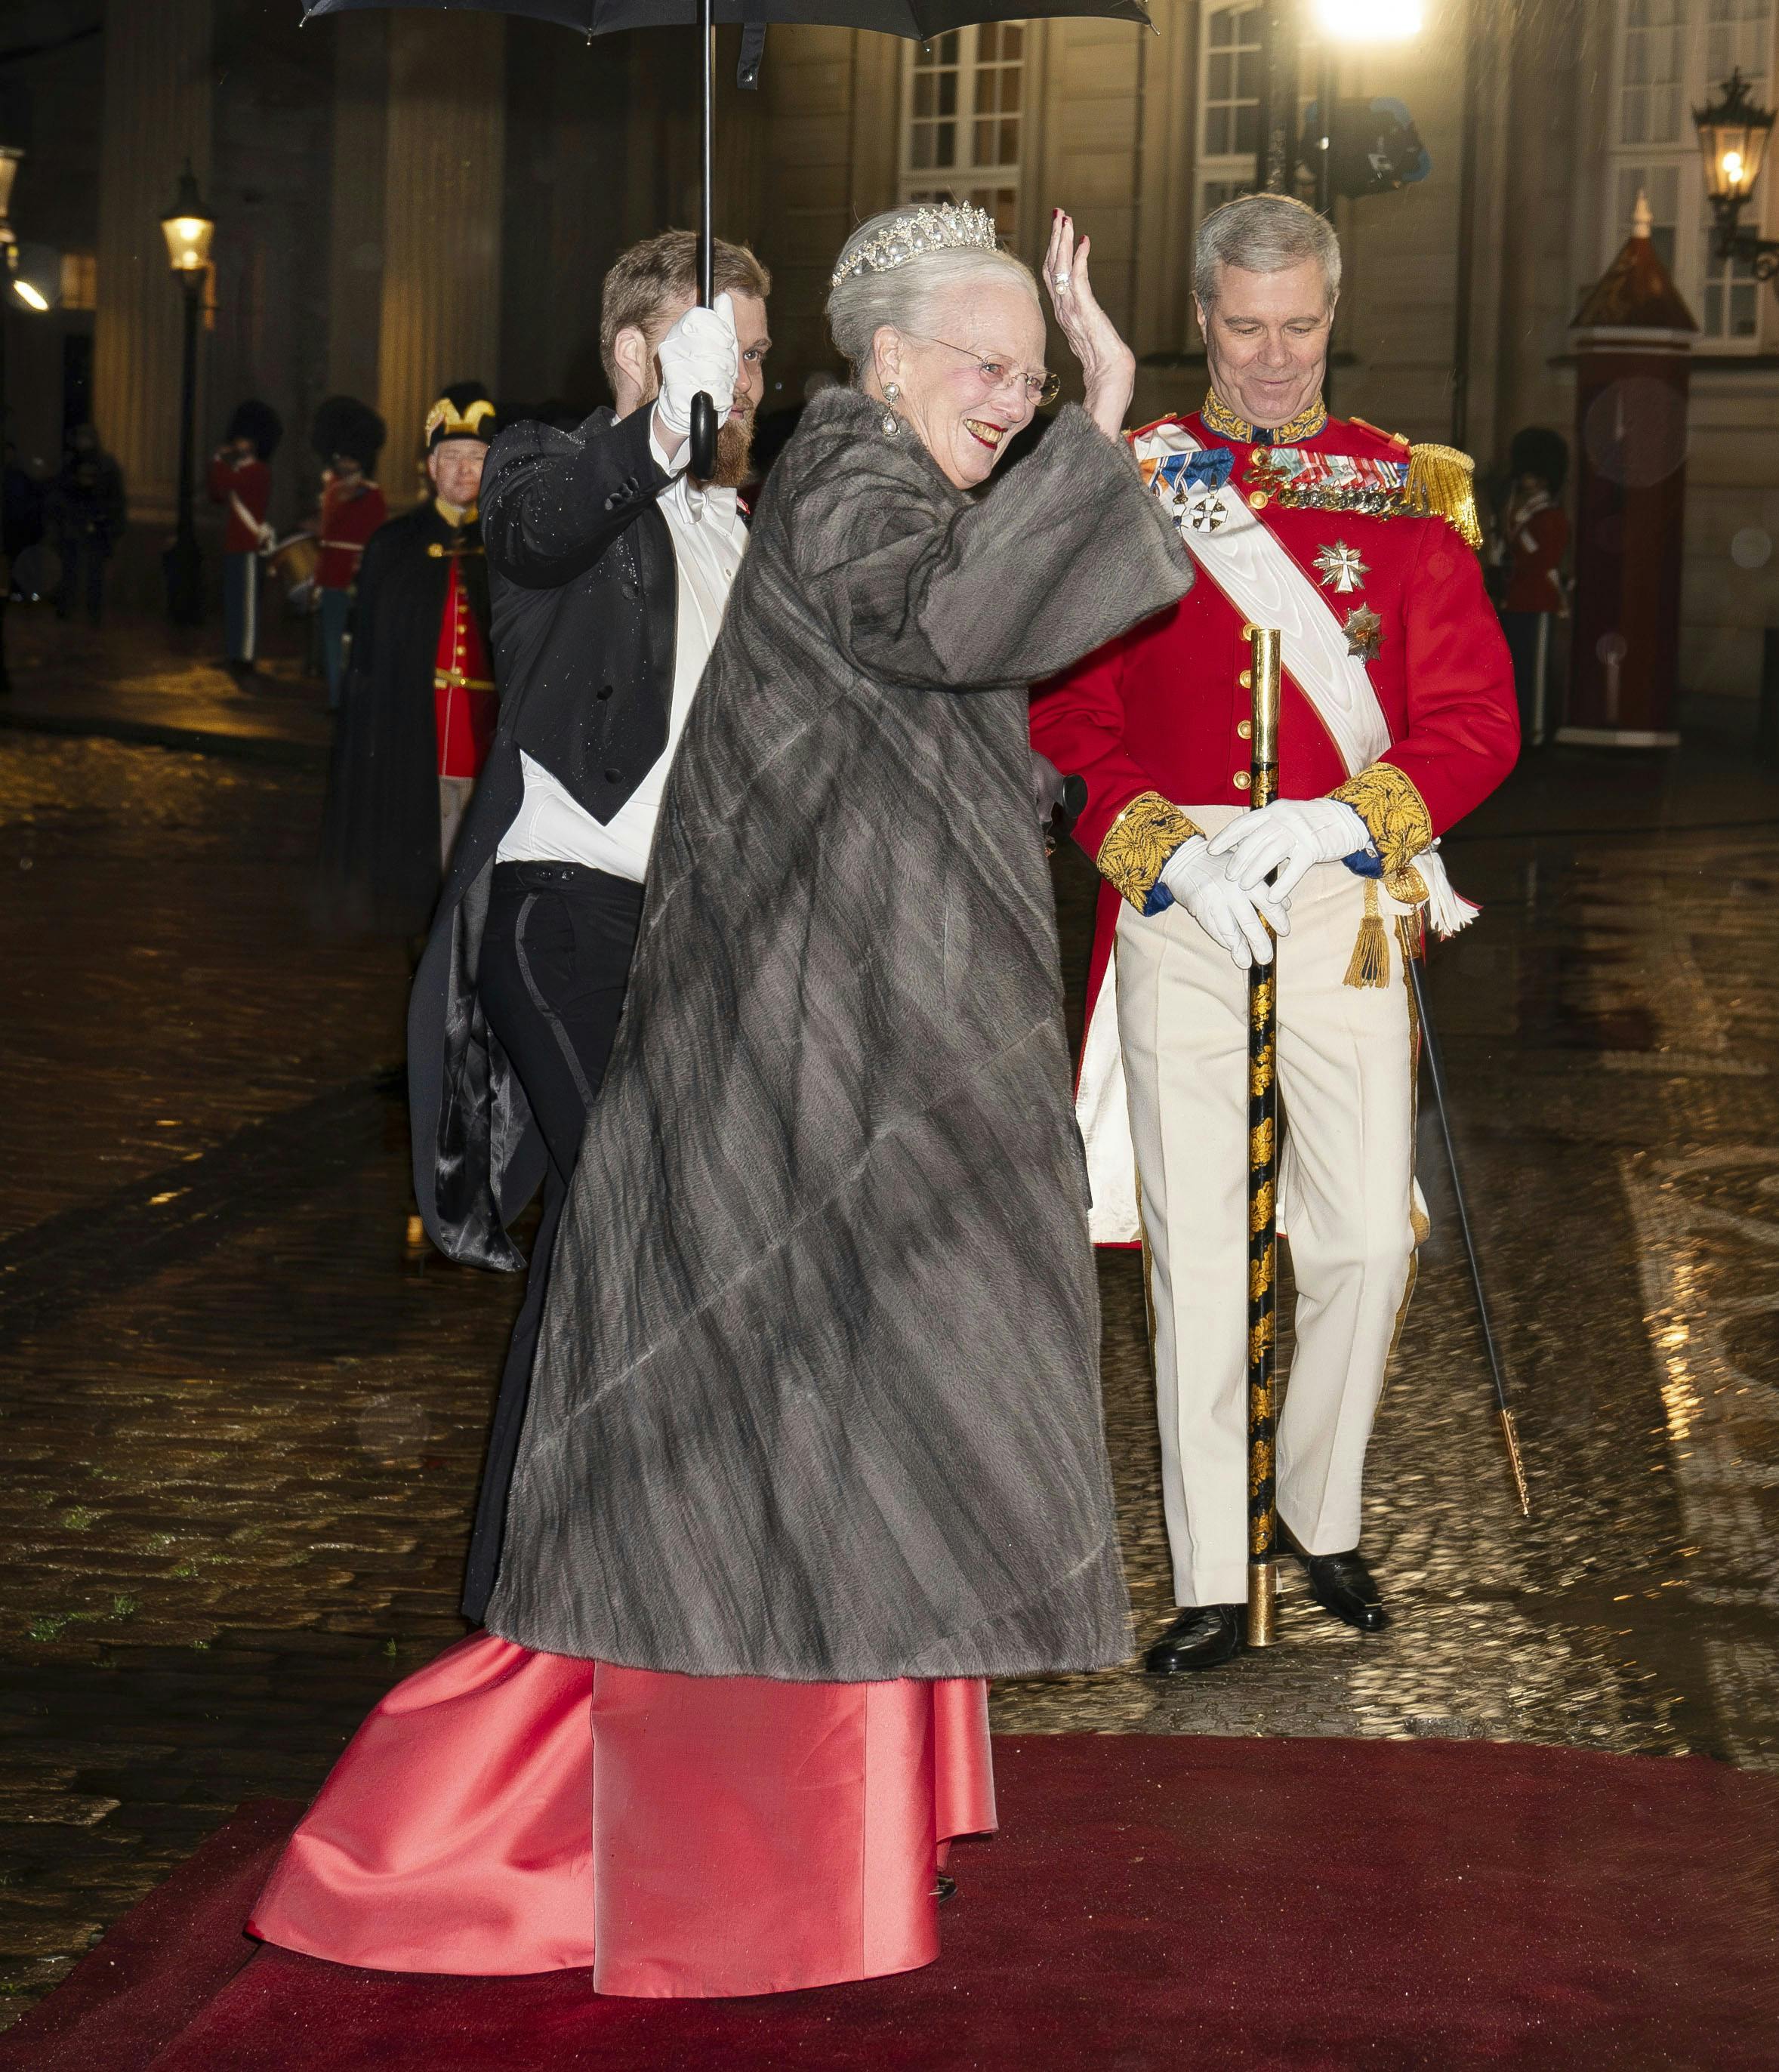 En perlerække af landets helt store stjerner synger for, når DR og TV 2 fredag aften hylder dronning Margrethe med showet ”Danmarks dronning - den største tak” på Kongens Nytorv.